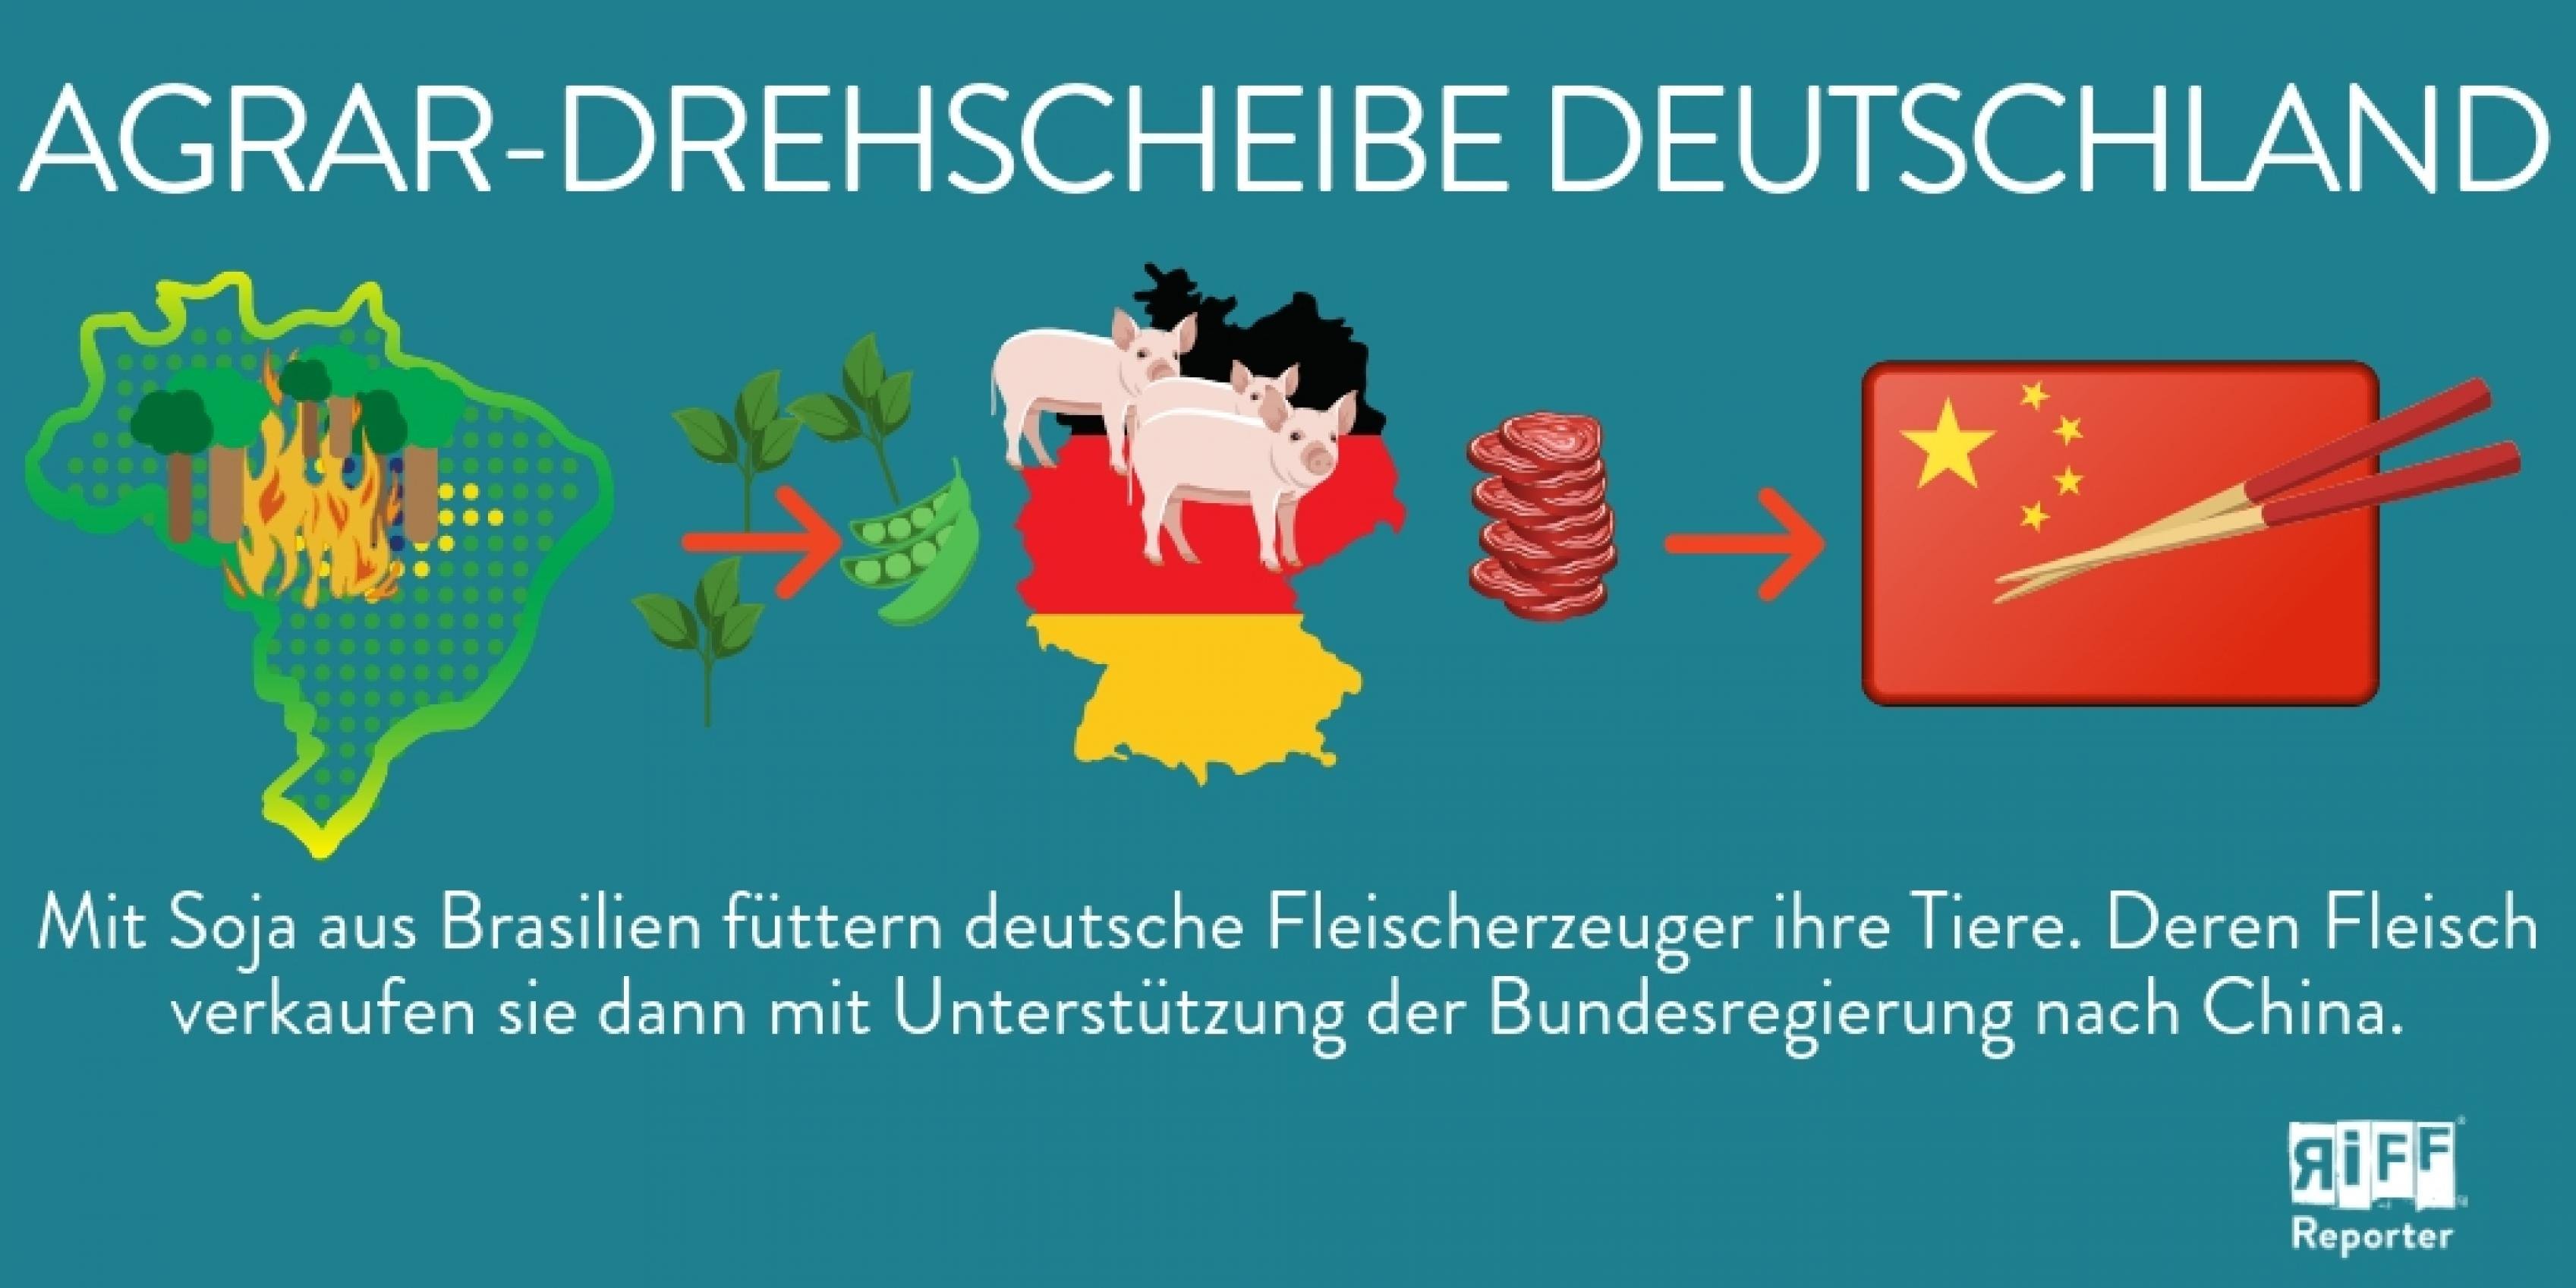 Agrar-Drehscheibe Deutschland: Mit Soja aus Brasilien werden in Deutschland Tiere gefüttert. Deren Fleisch wird dann auch nach China exportiert.